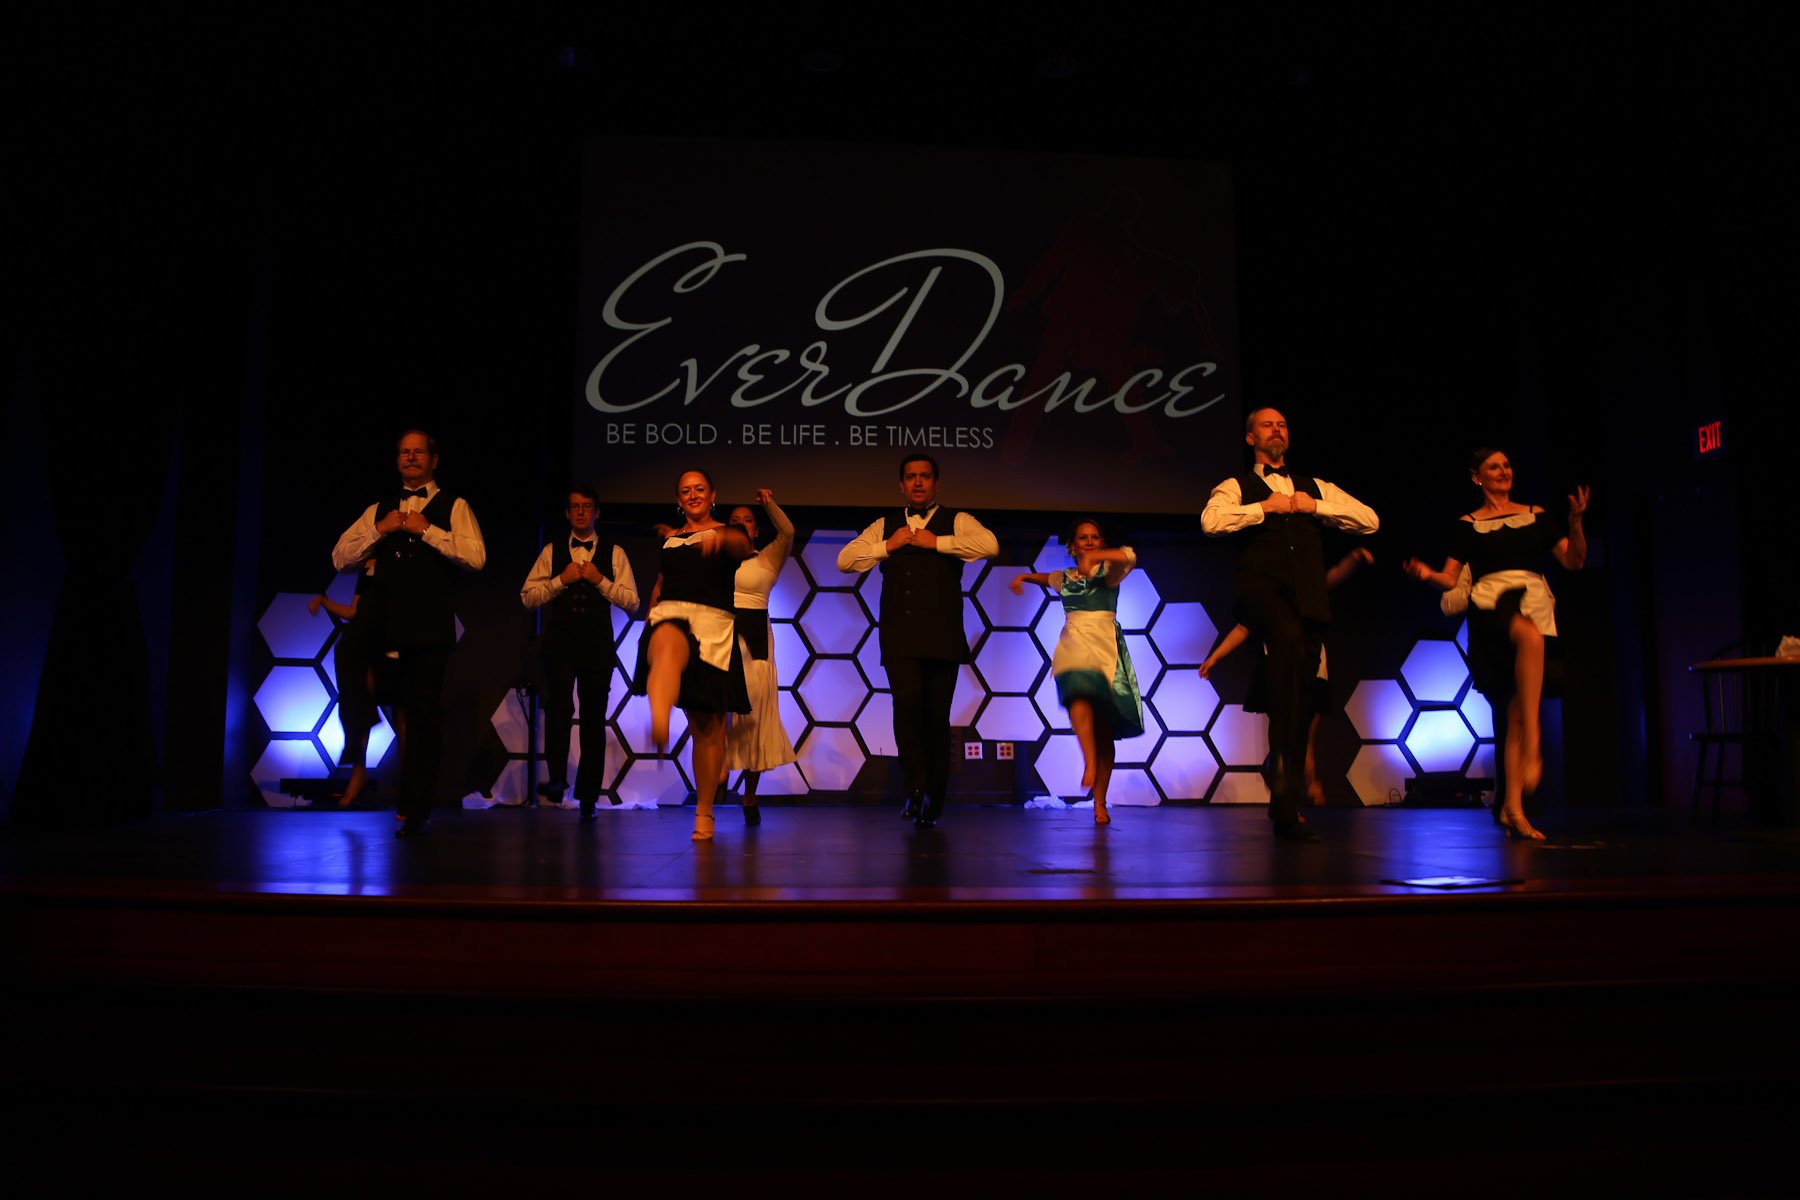 everdance1215170112.jpg